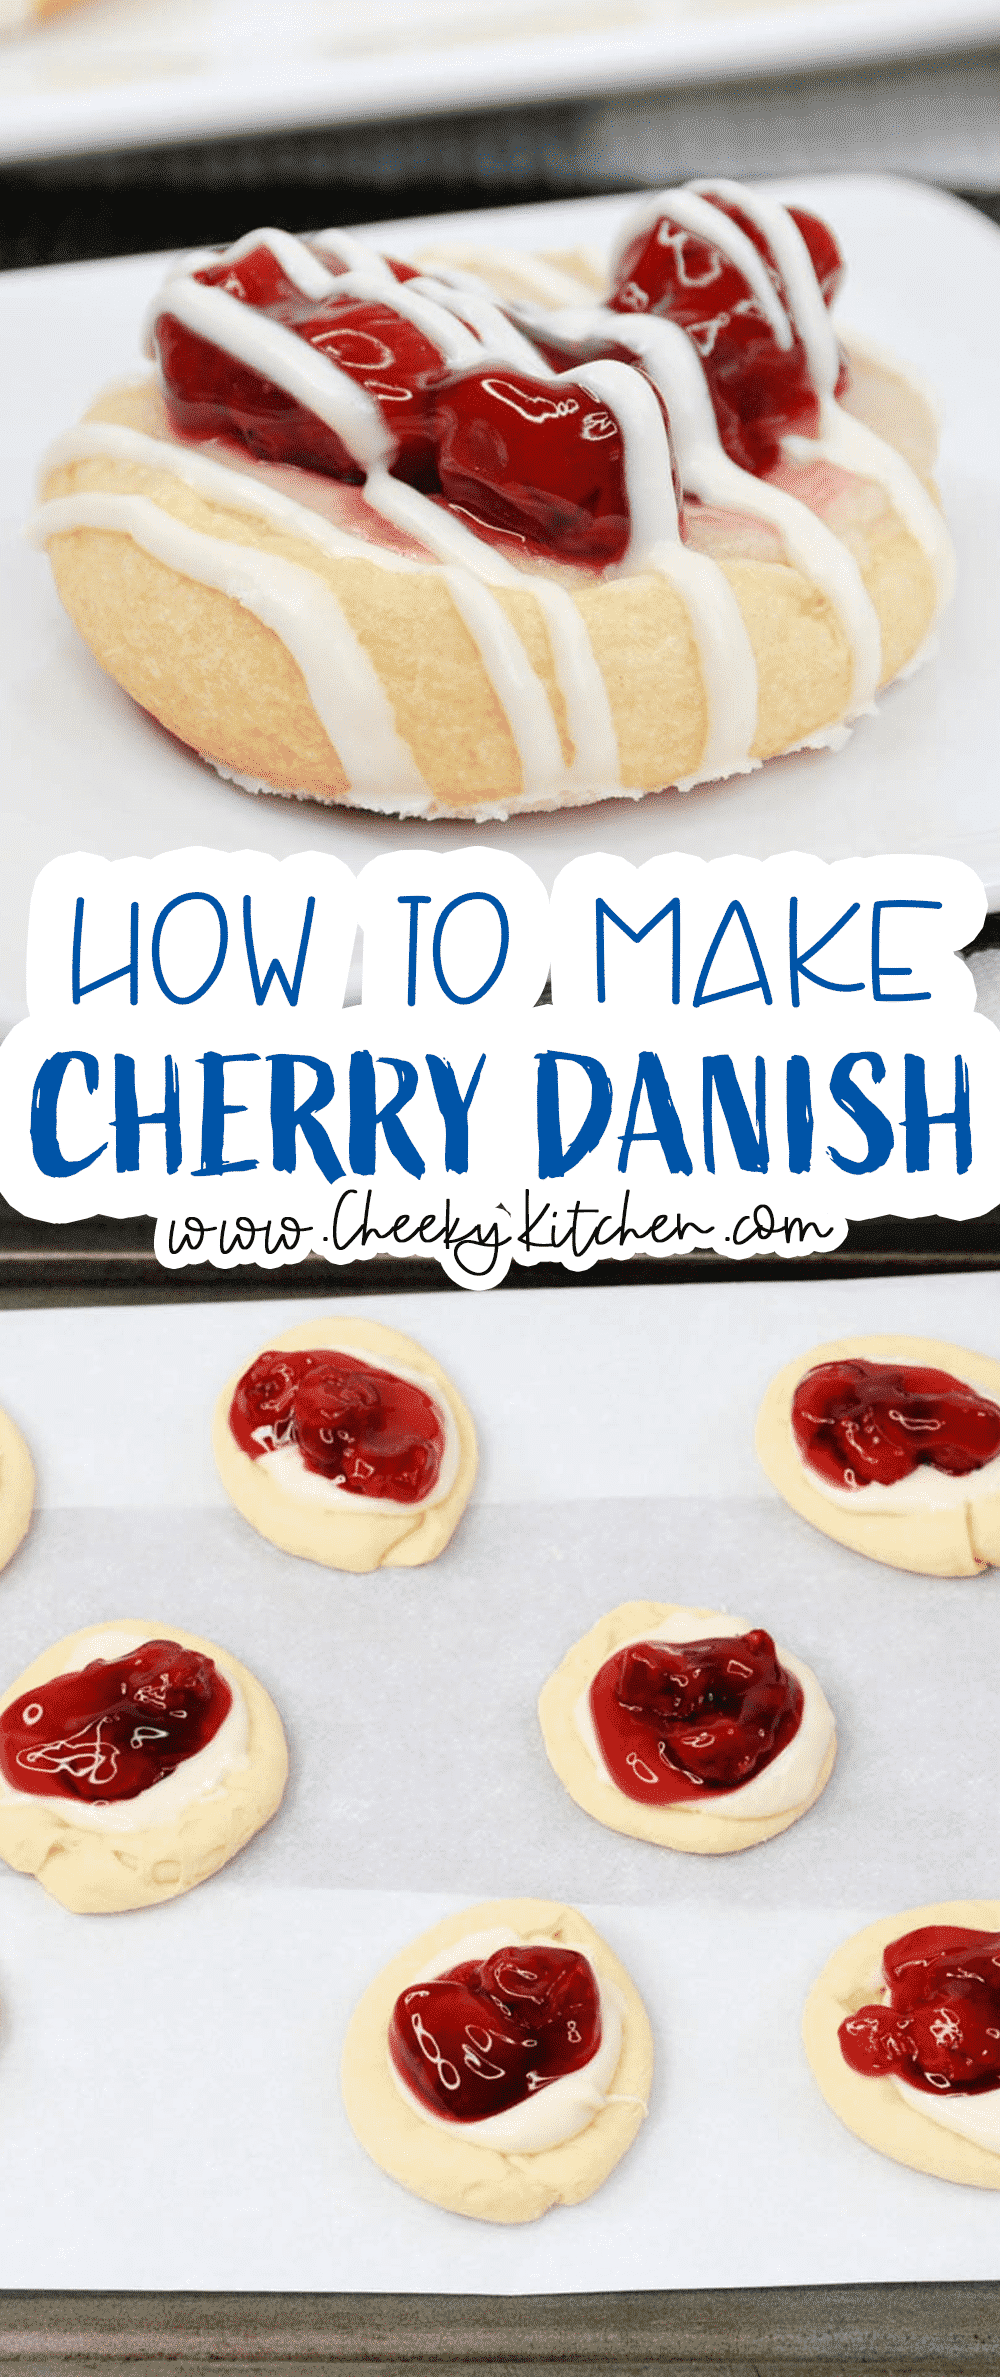 Easy Cherry Danish